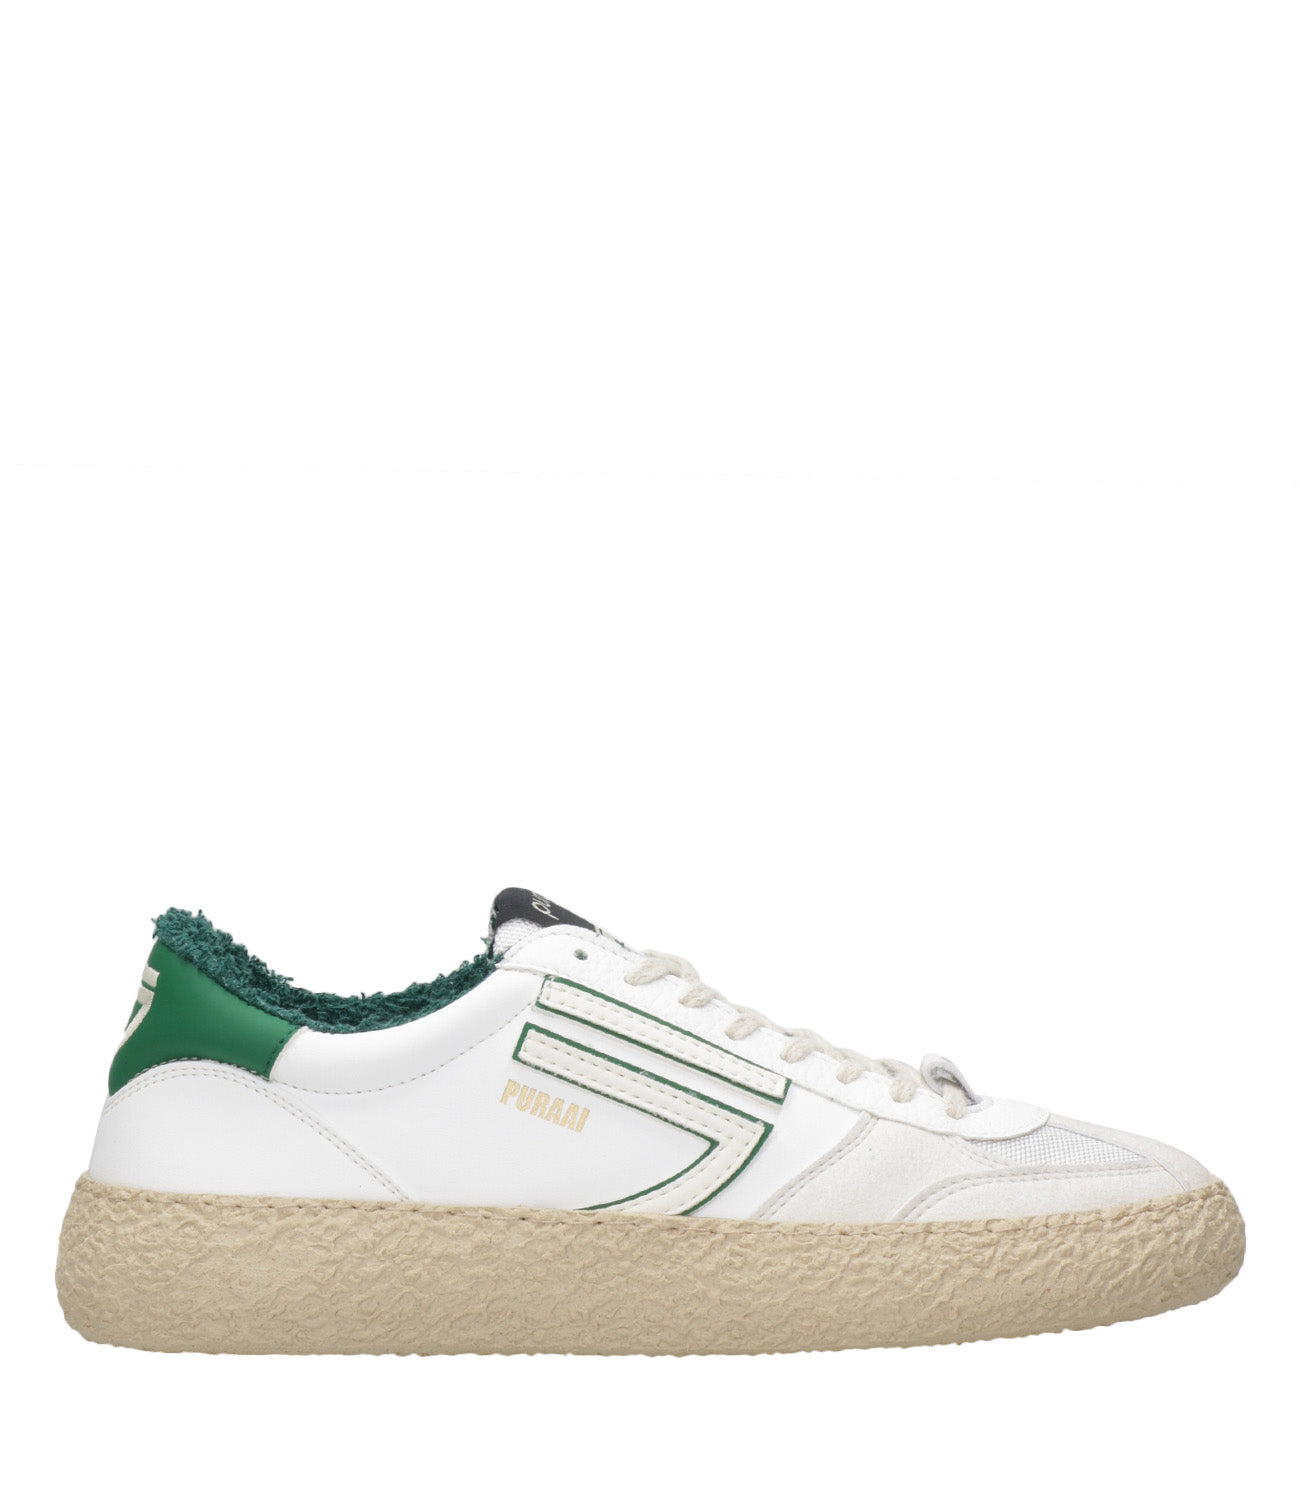 Puraai | Sneakers 1.01 Classic White and Green